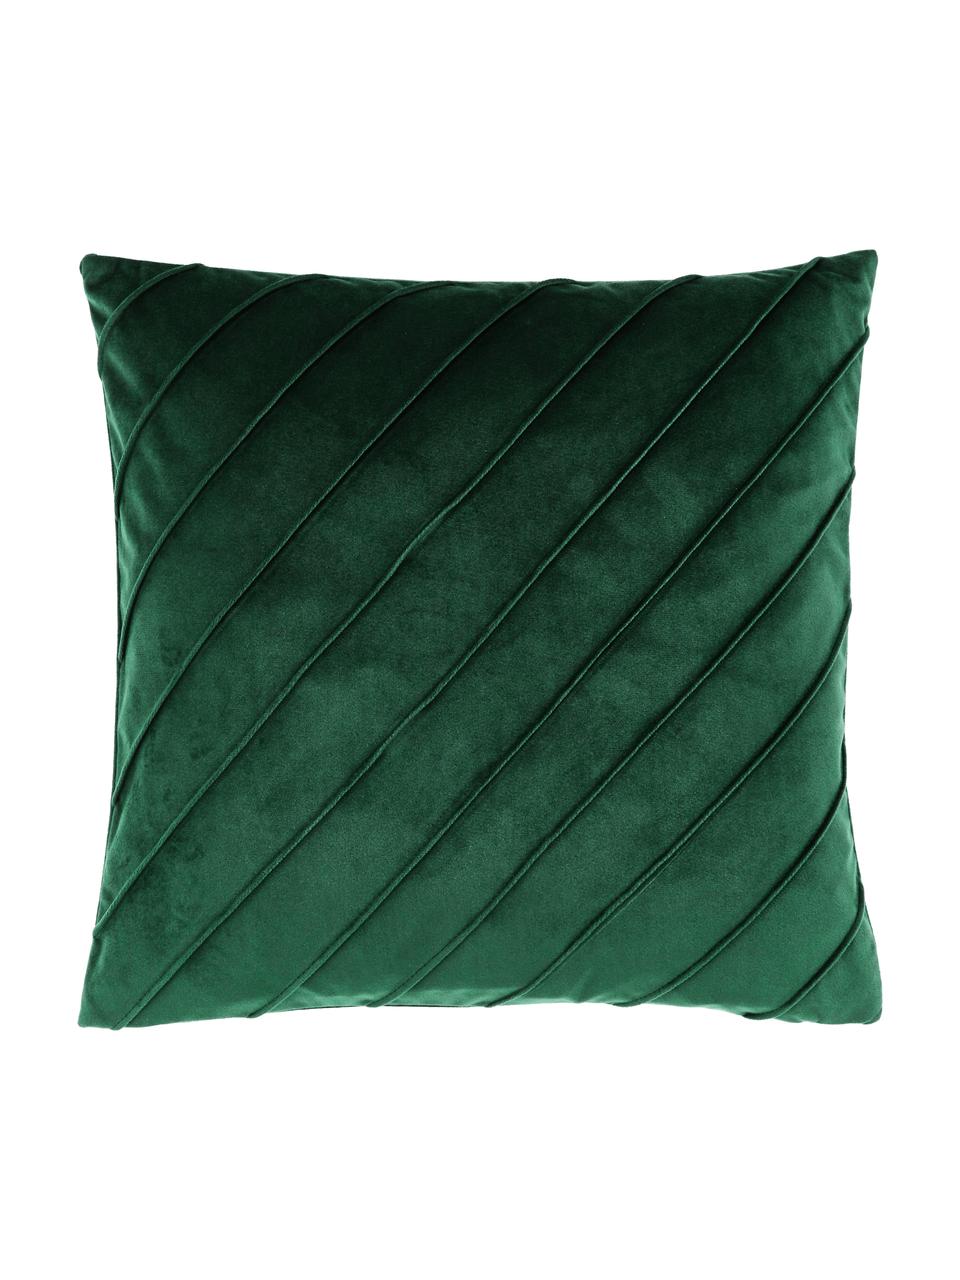 Poszewka na poduszkę z aksamitu Leyla, Aksamit (100% poliester), Zielony, S 40 x D 40 cm